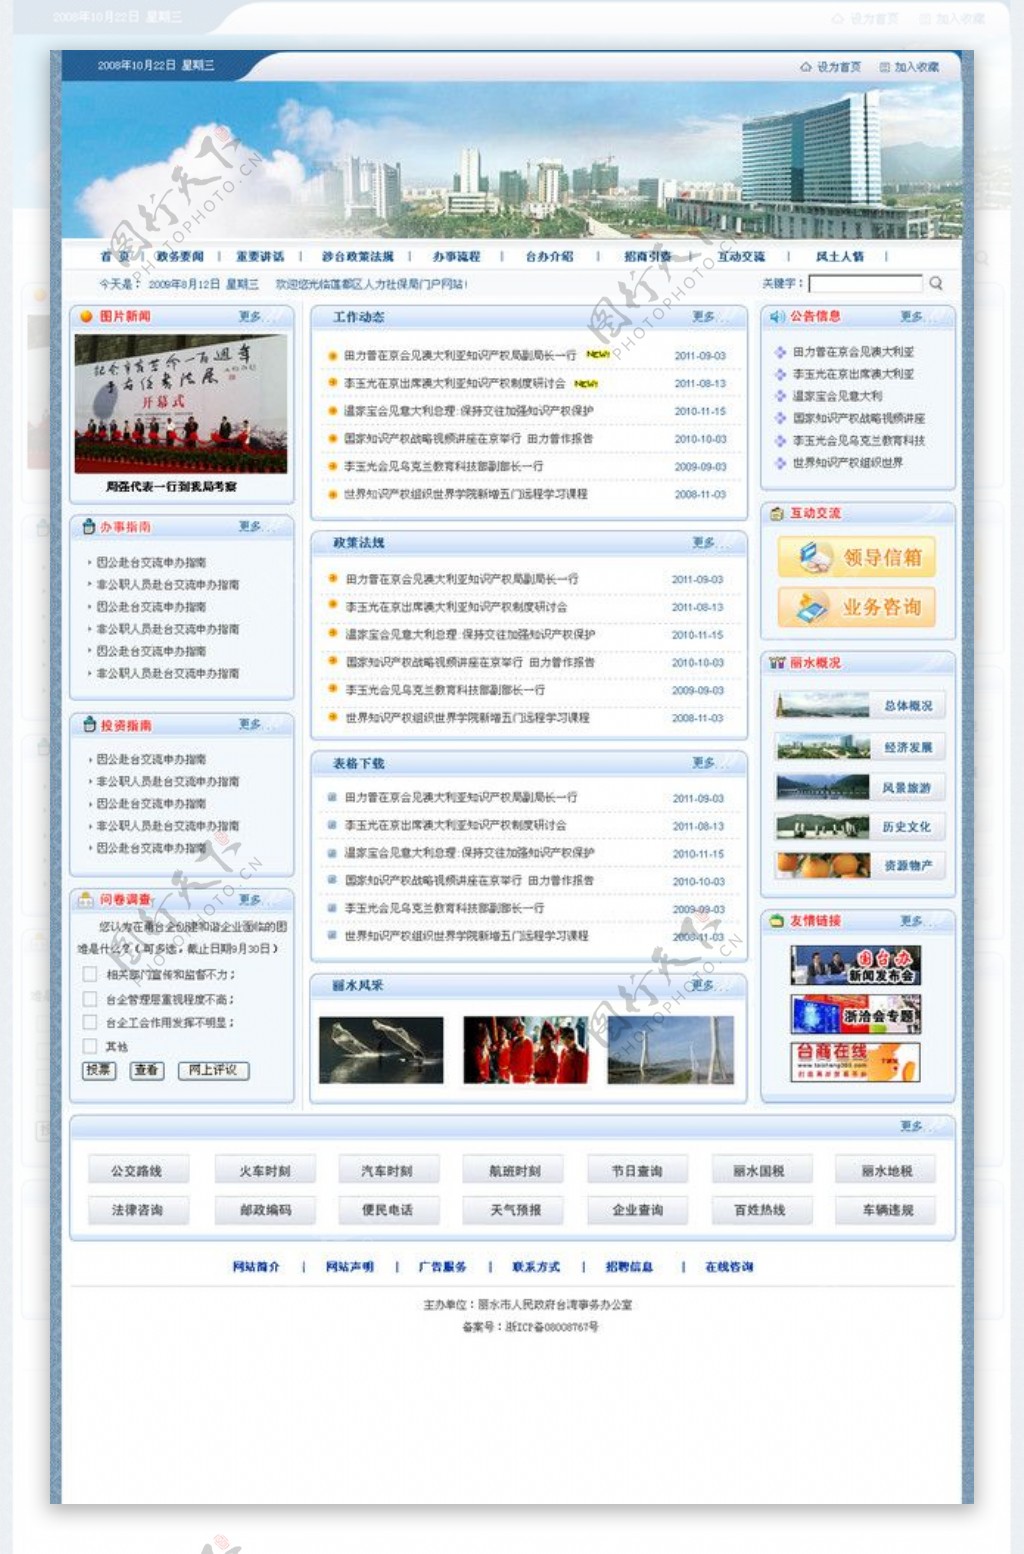 人民台湾事务办公室门户网站图片